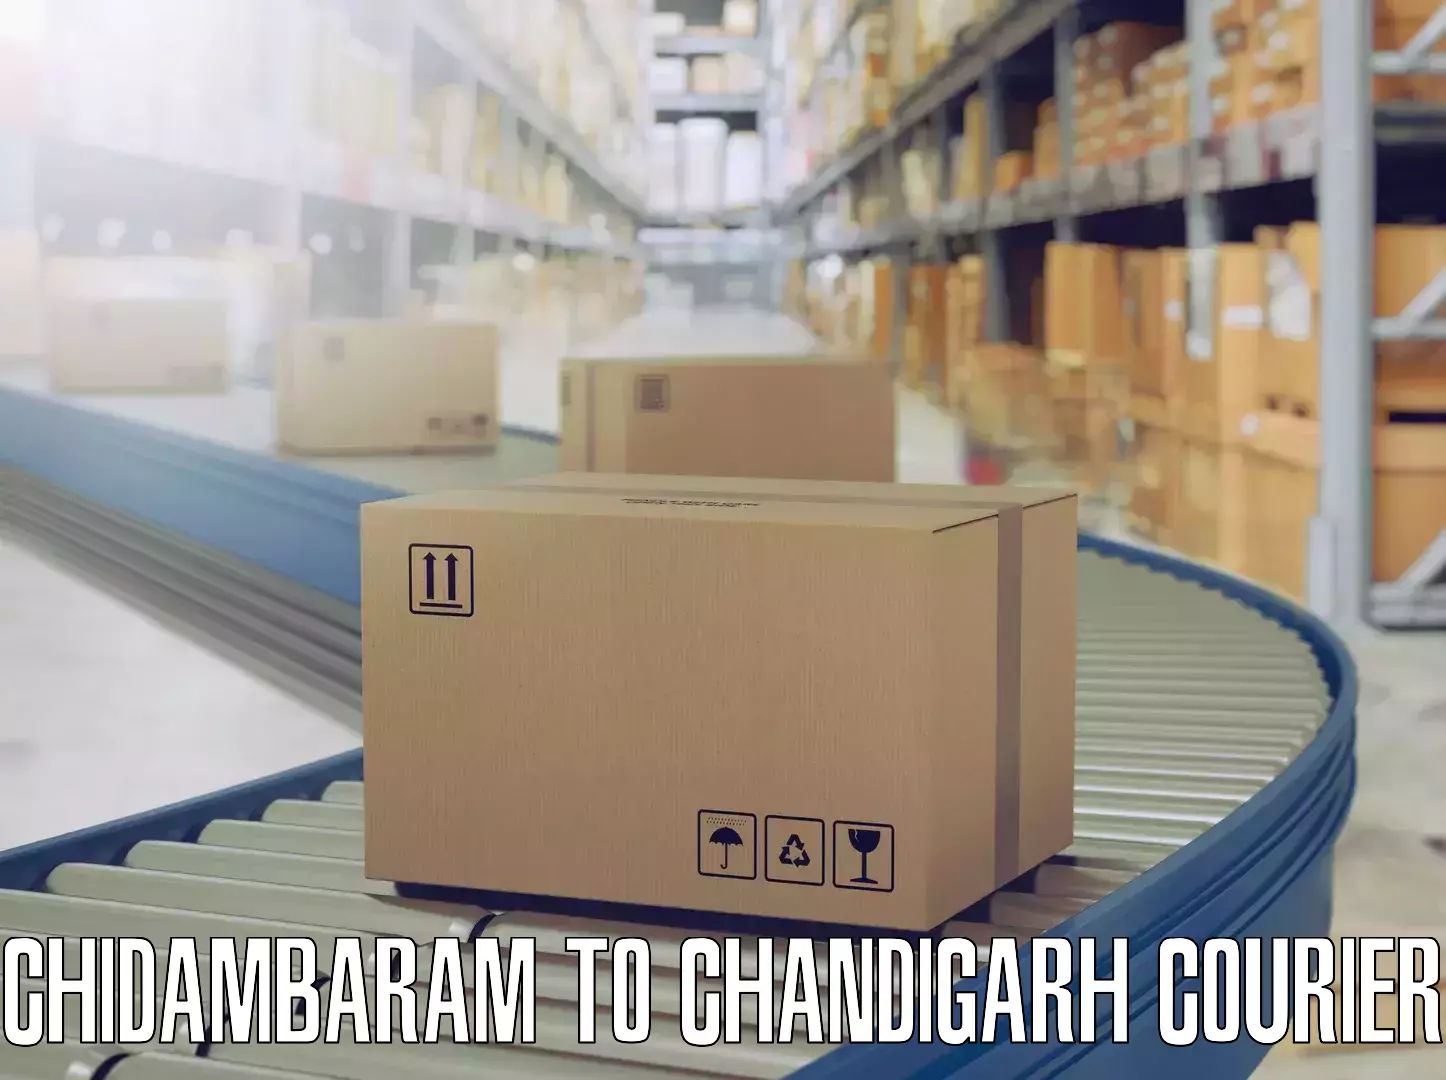 Household moving experts Chidambaram to Chandigarh